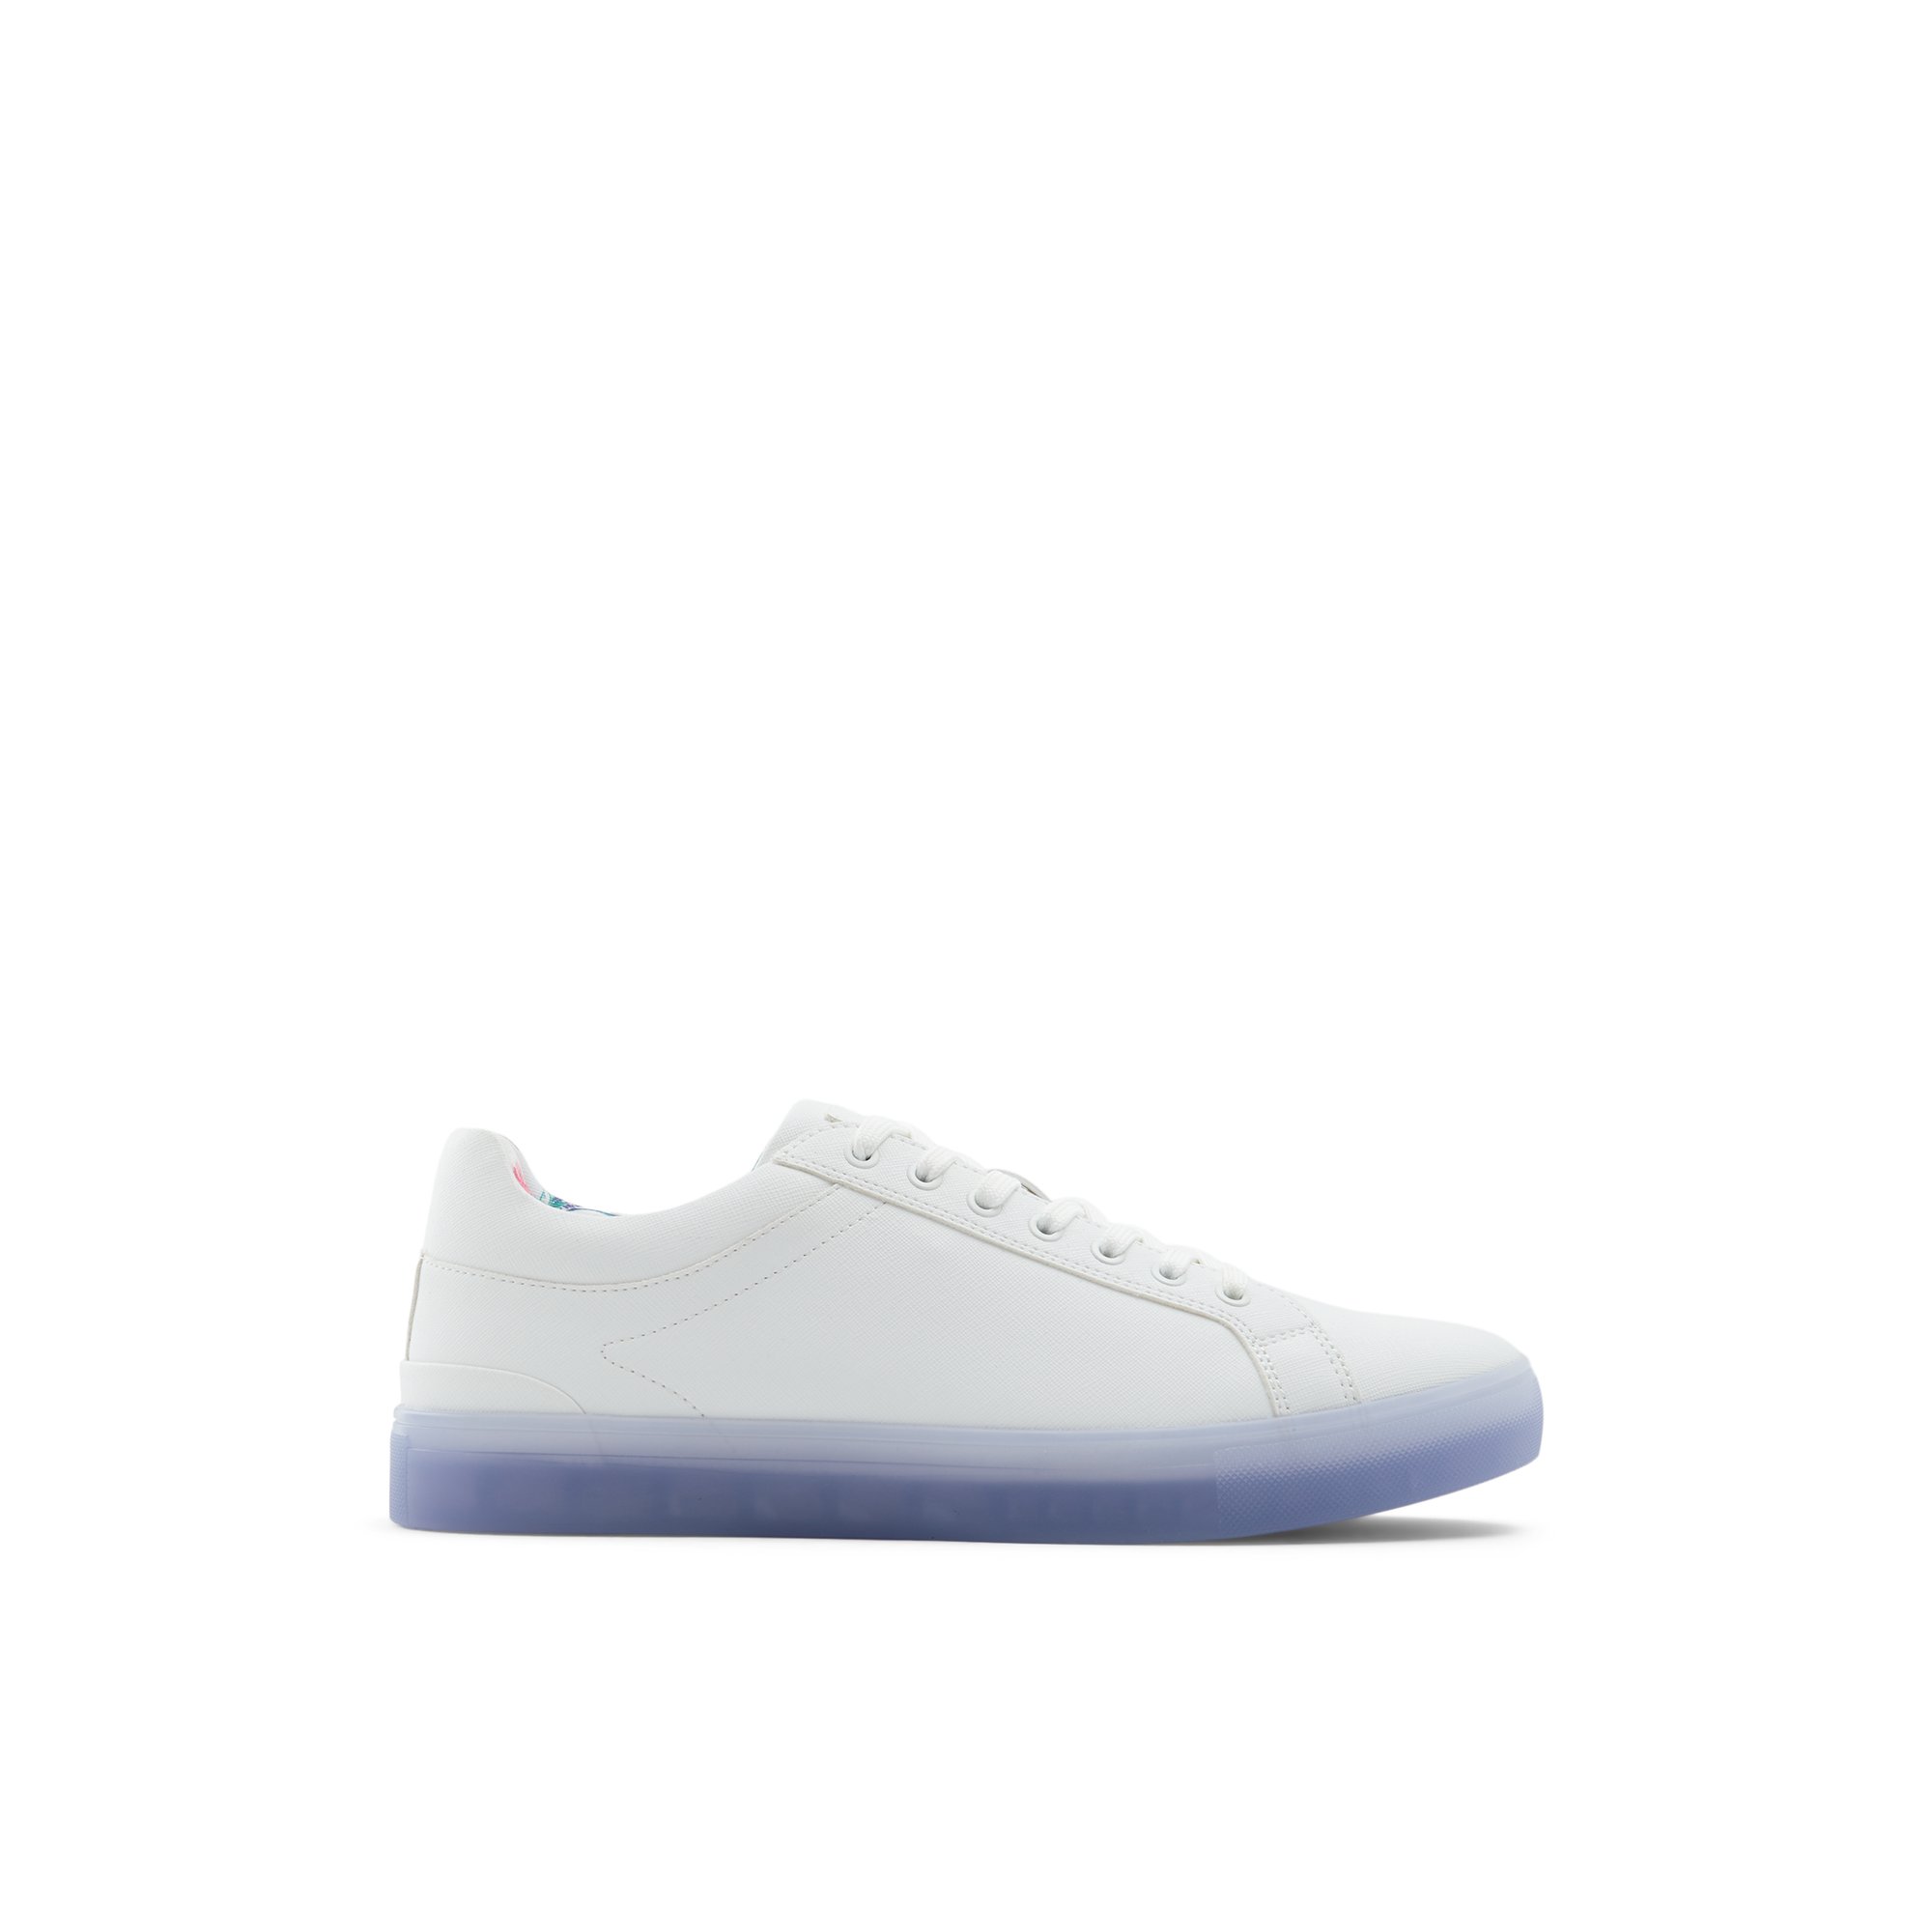 Image of ALDO Eisingen - Men's Low Top Sneakers - White, Size 8